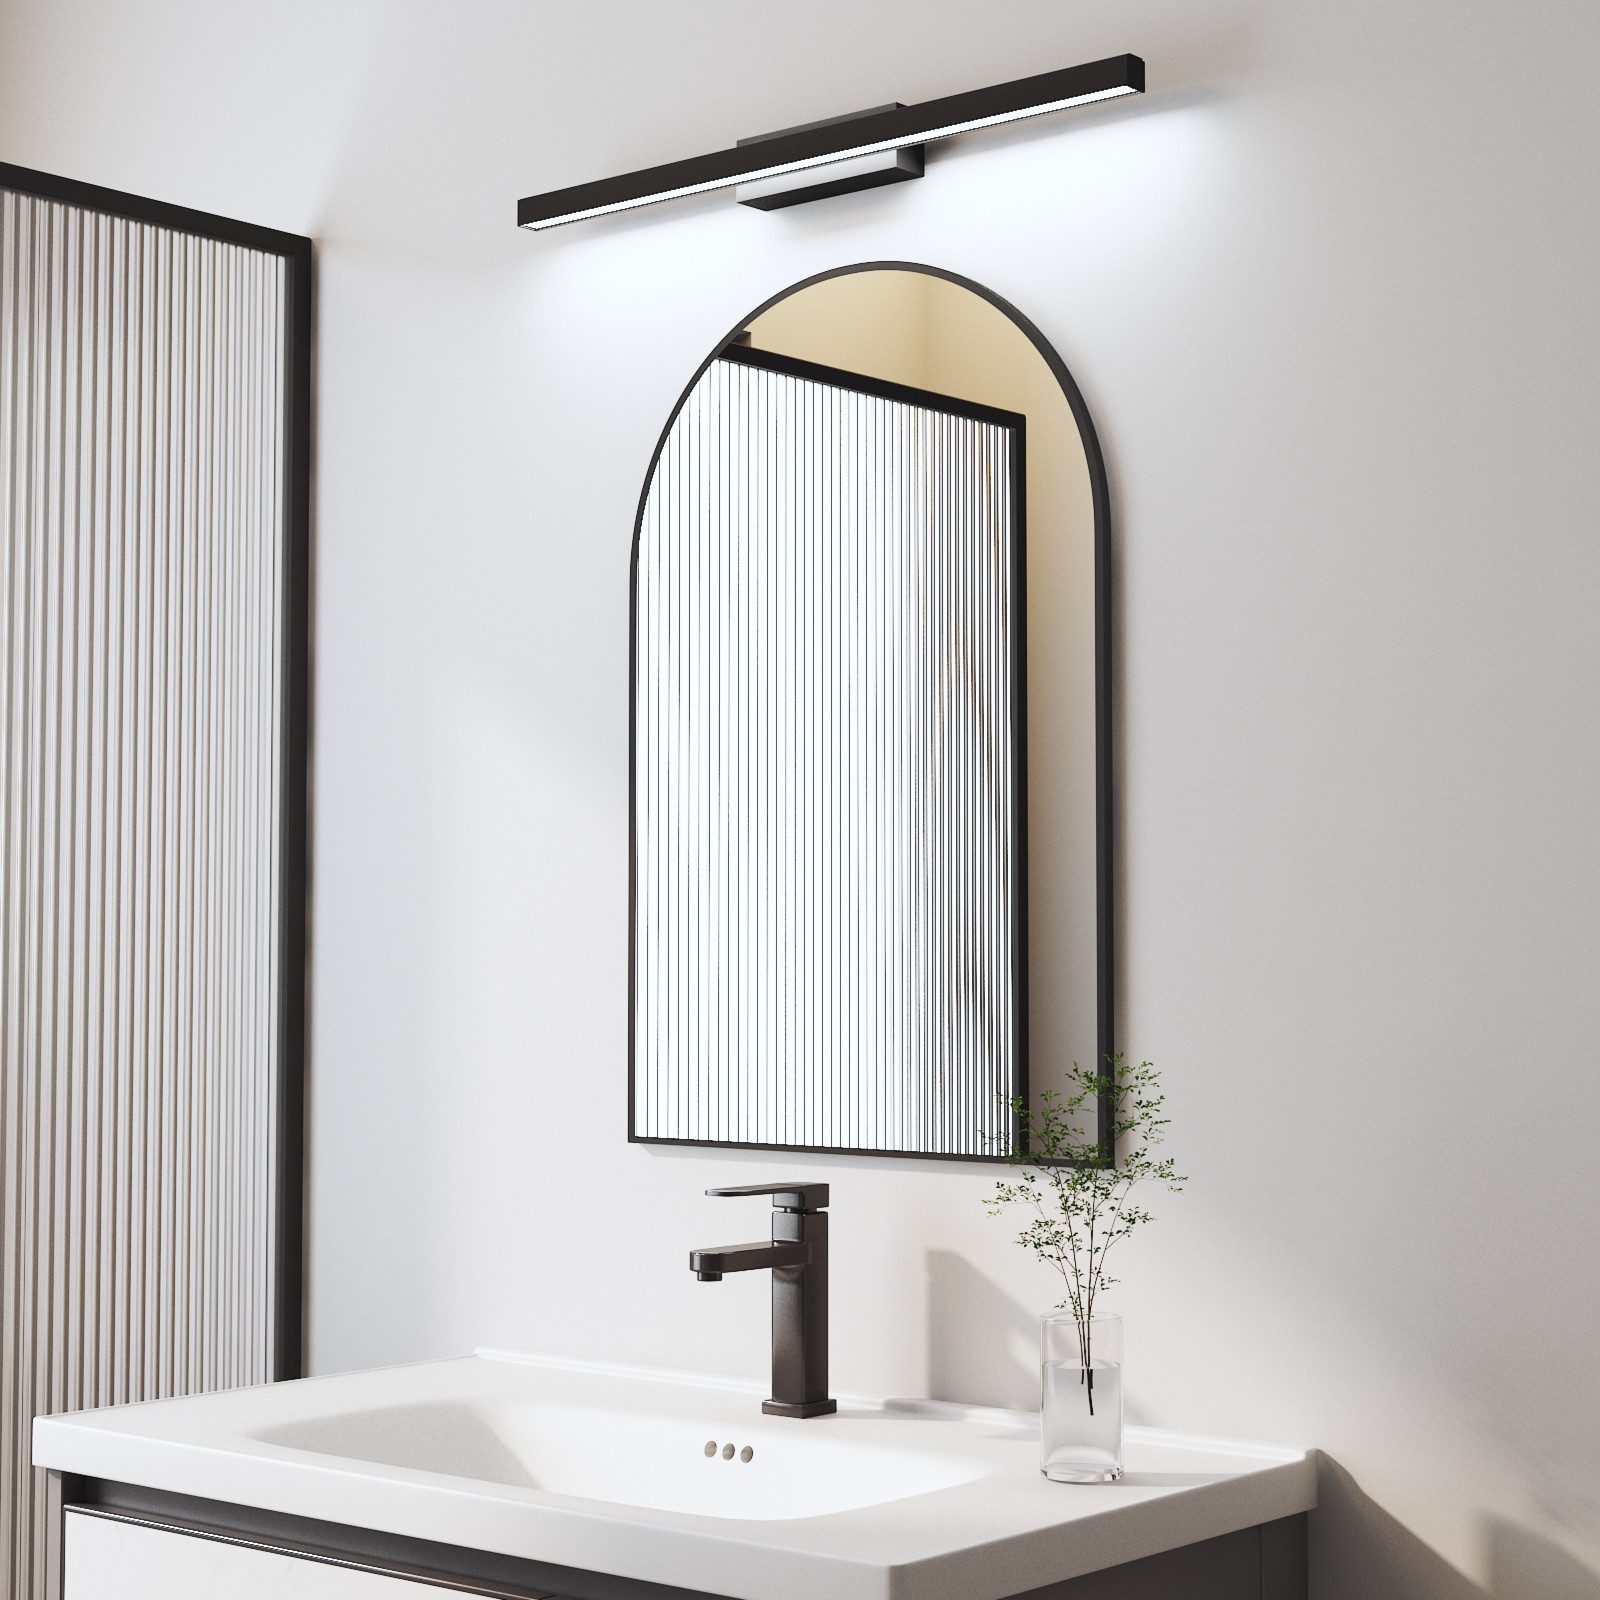 WDWRITTI Spiegel mit licht Badspiegel Wandspiegel mit 60cm LED Wandleuchte Kaltweiß (Rundbogen, 60x80, 50x70cm), HD Spiegel mit Metall Rahmen, energiesparender